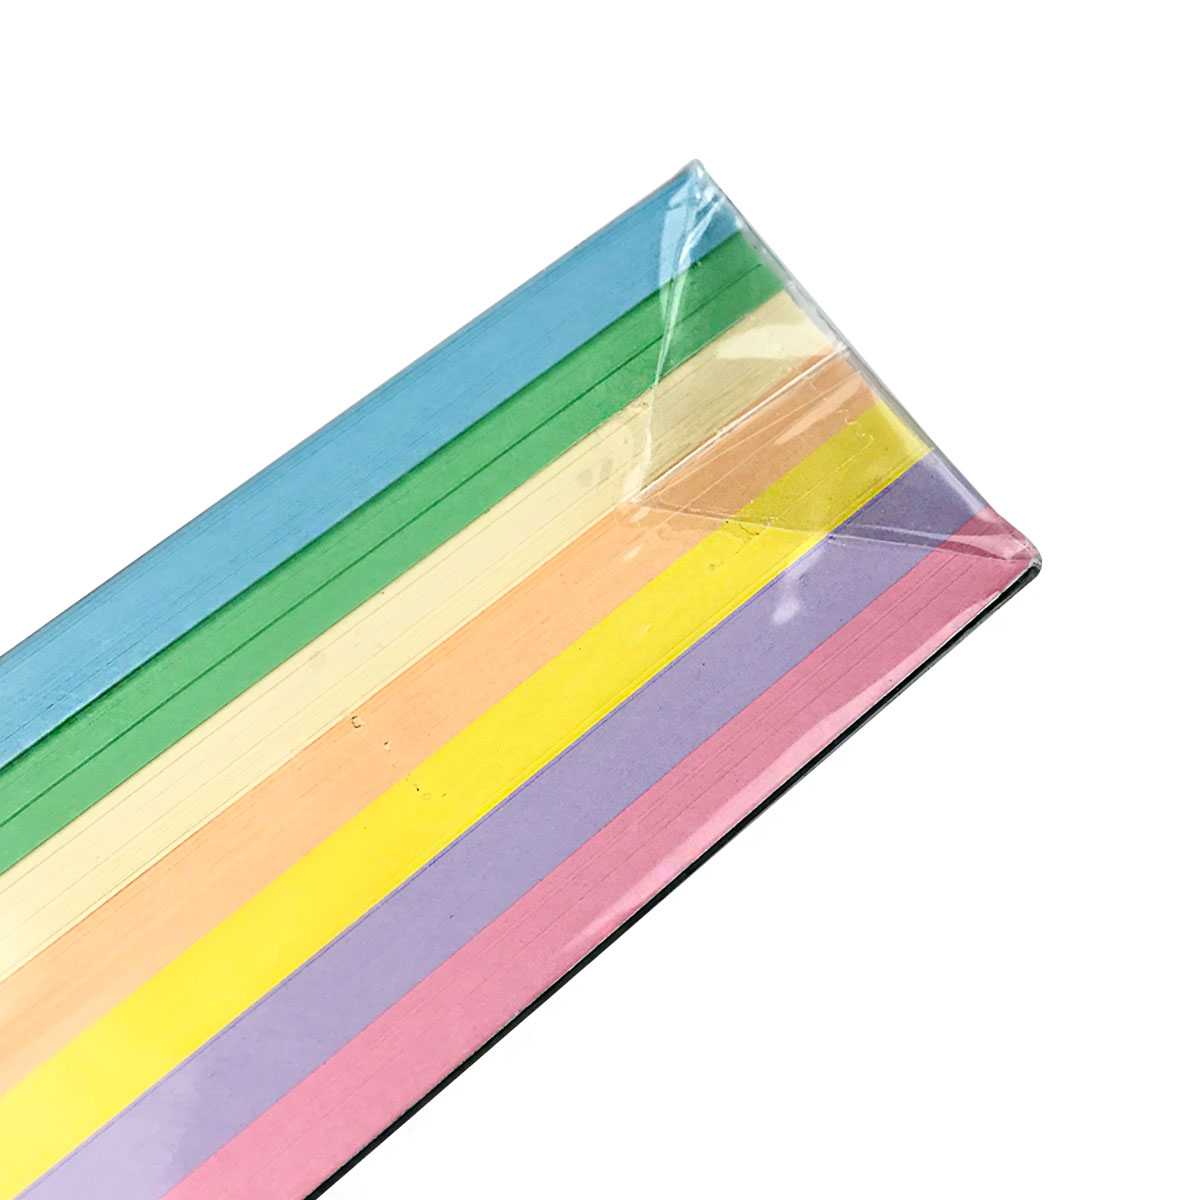 Paquete de 500 Hojas Papel bond de colores Suaves (Pasteles) Tamaño Carta PAPER LINE